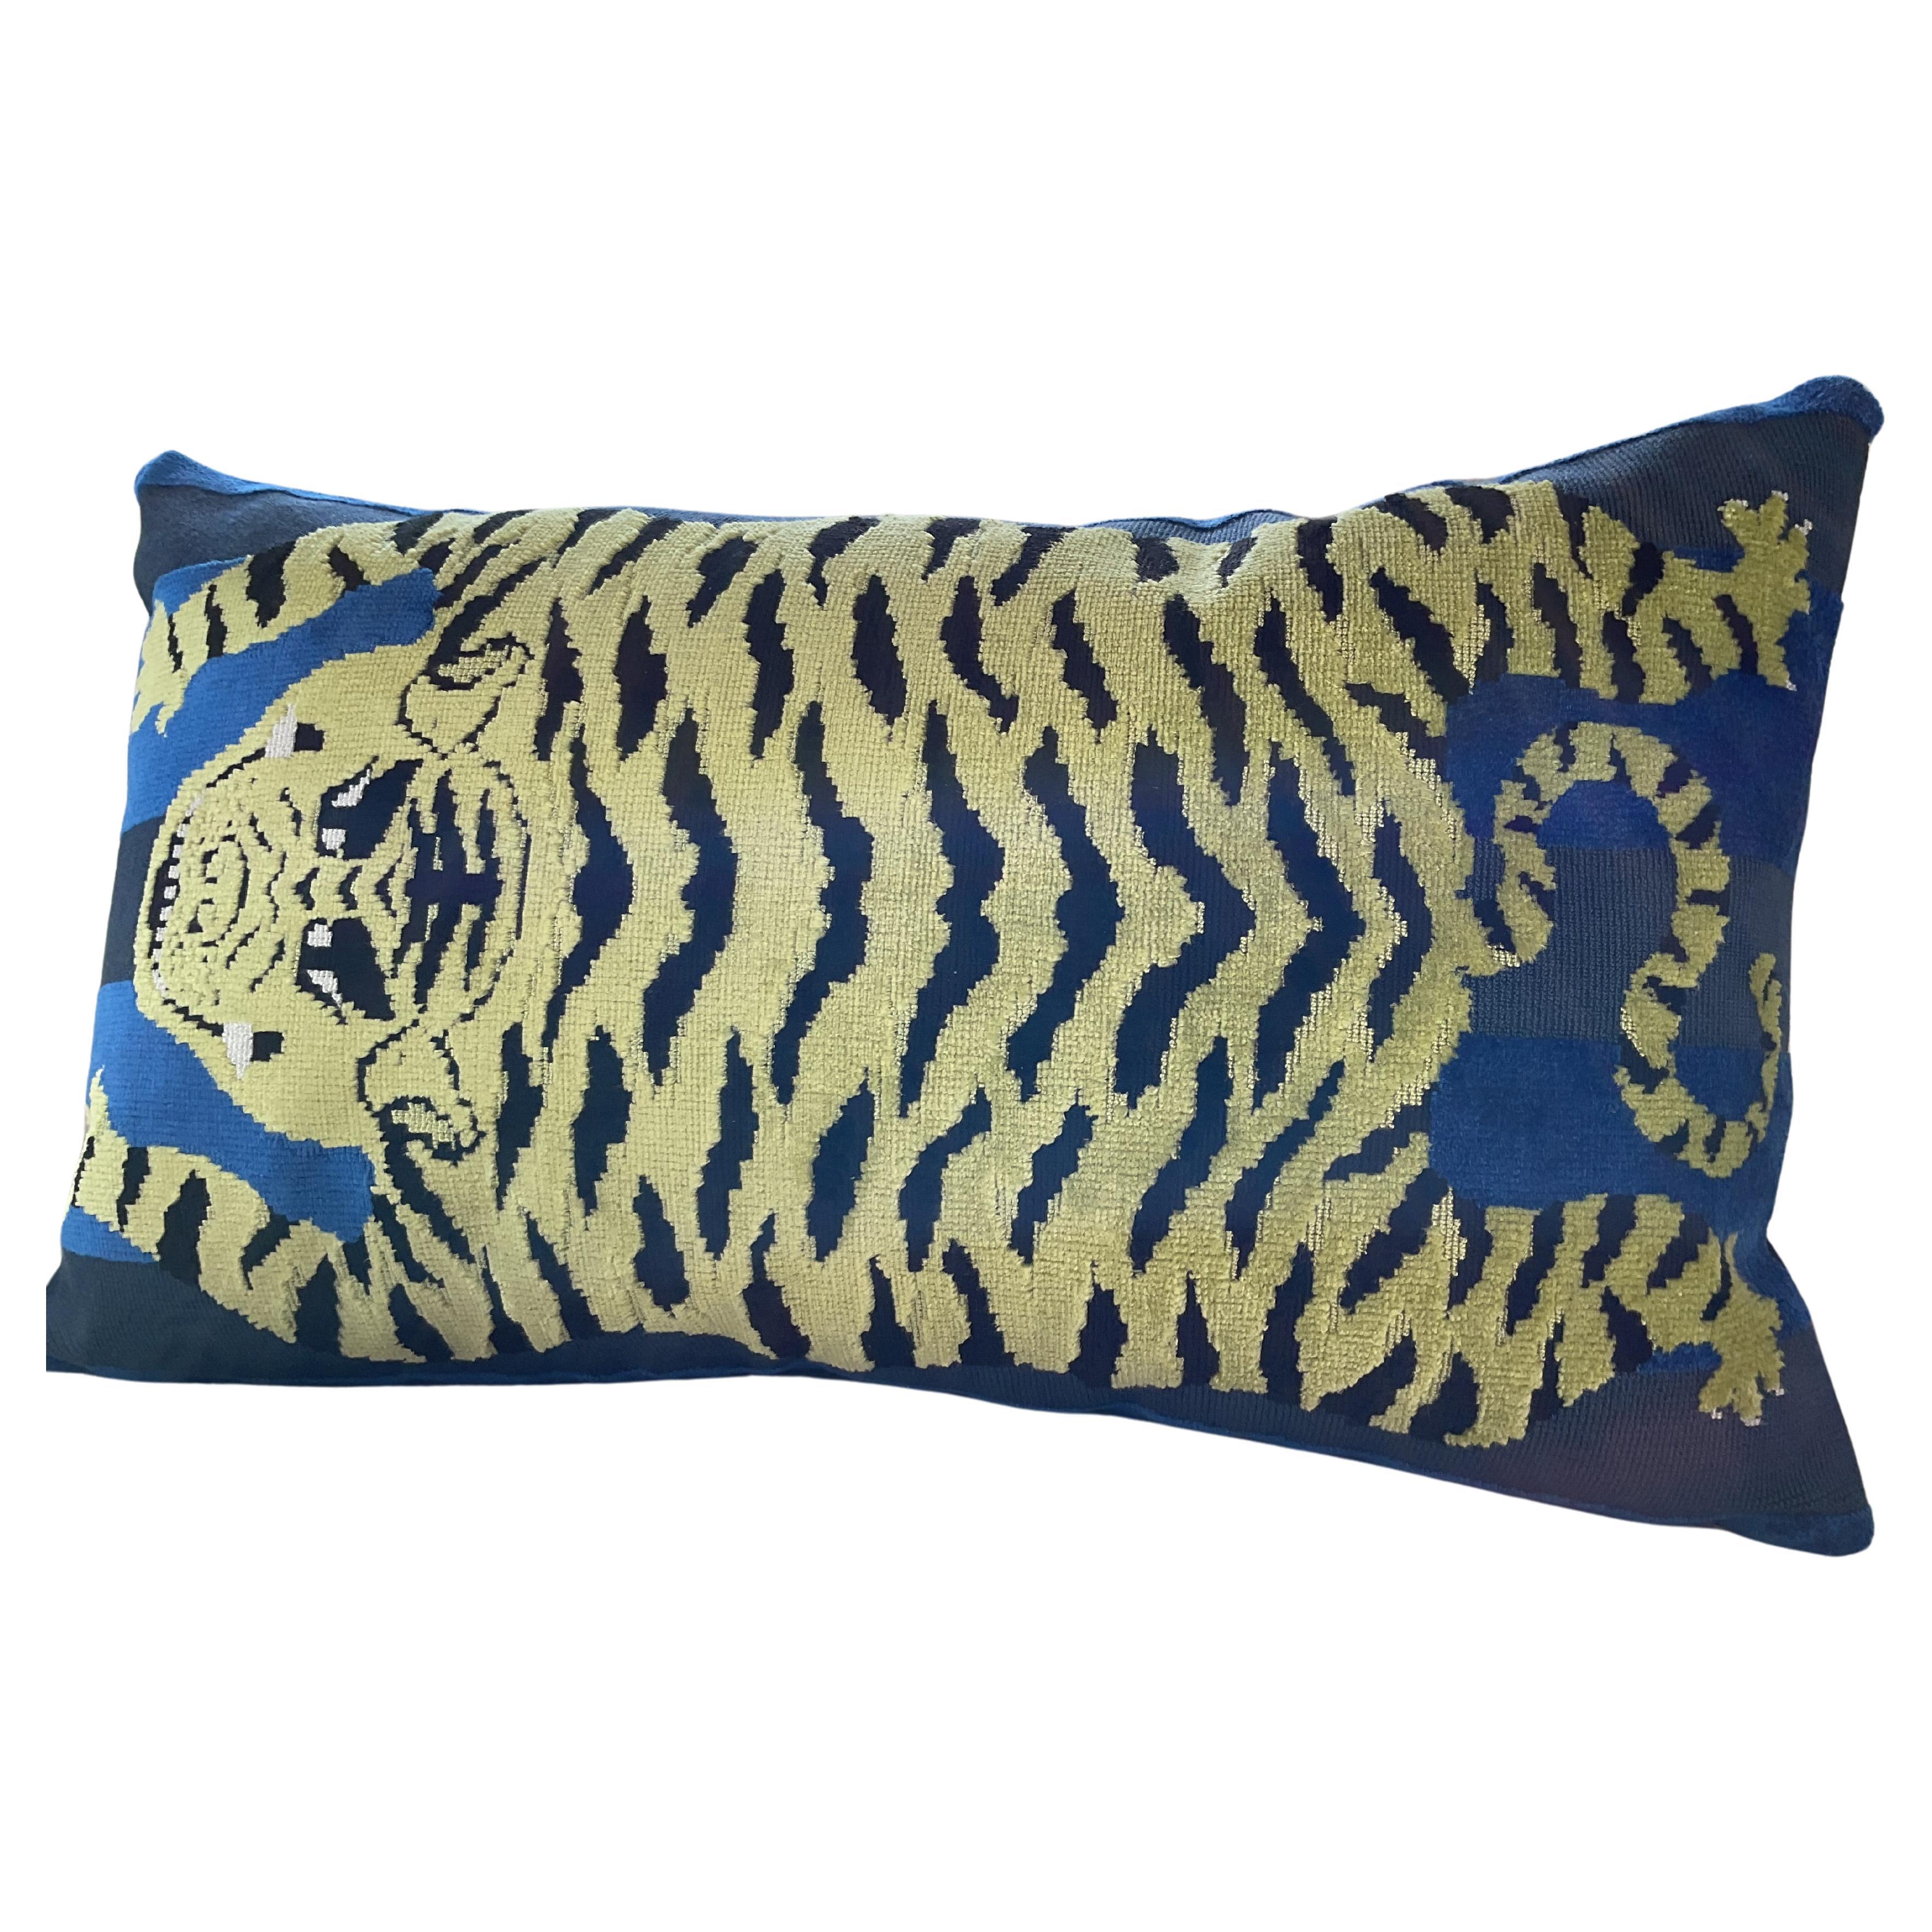 Schumacher Jokhang Tiger in Blau mit Daunen gefülltes Kissen in Größe 12 x 20